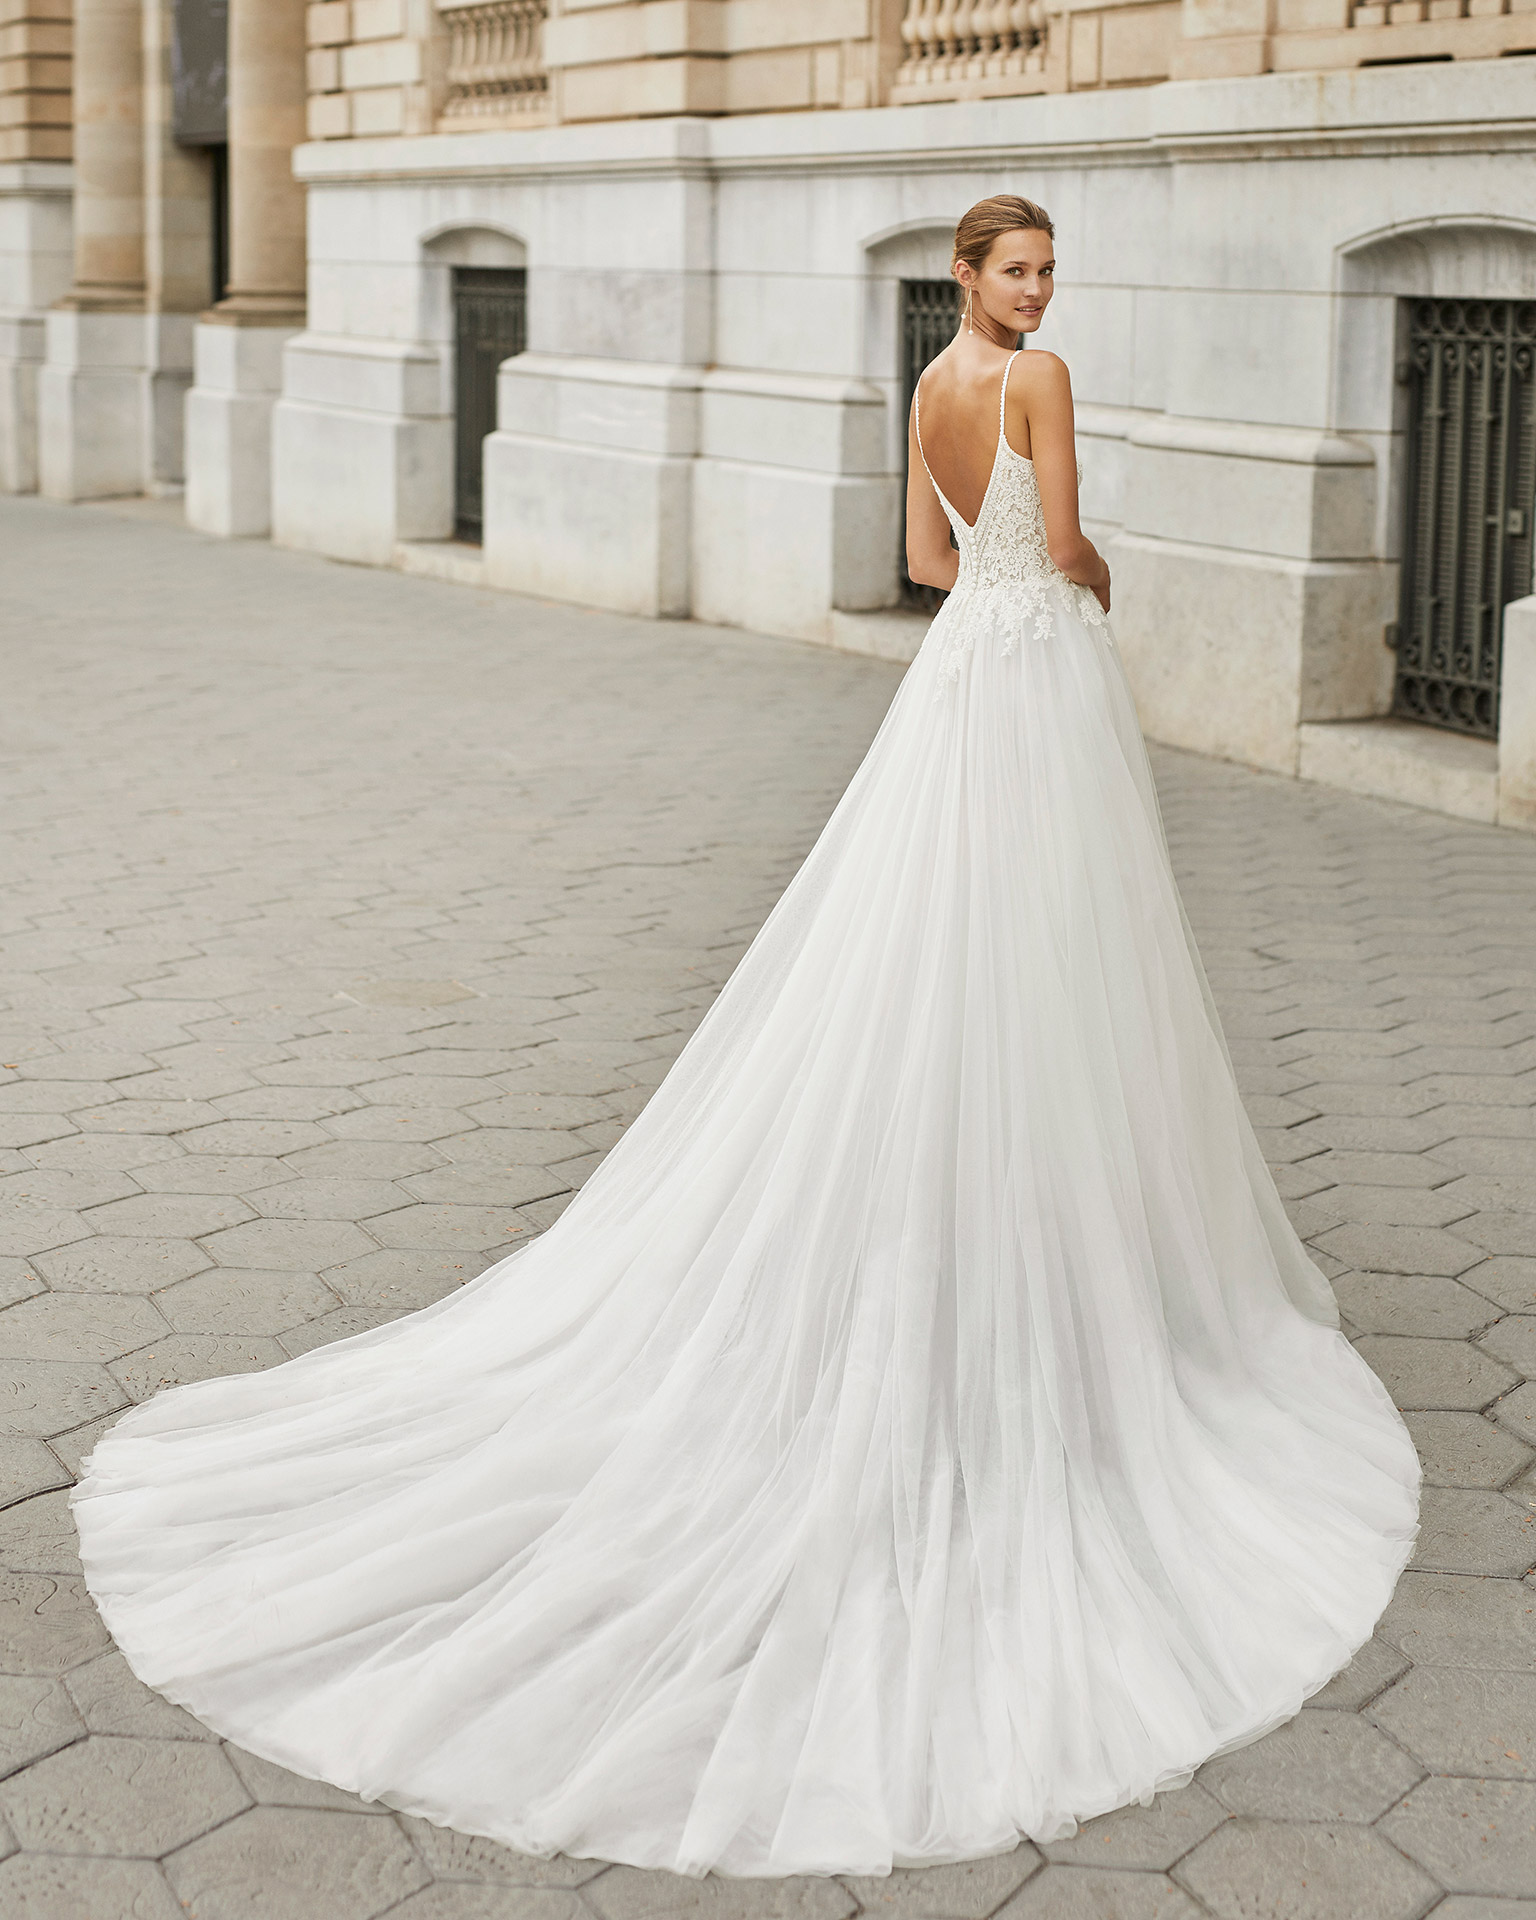 Vestido de novia de estilo elegante, tul, encaje y pedrería. Escote deep plunge y espalda en V. Colección  2022.